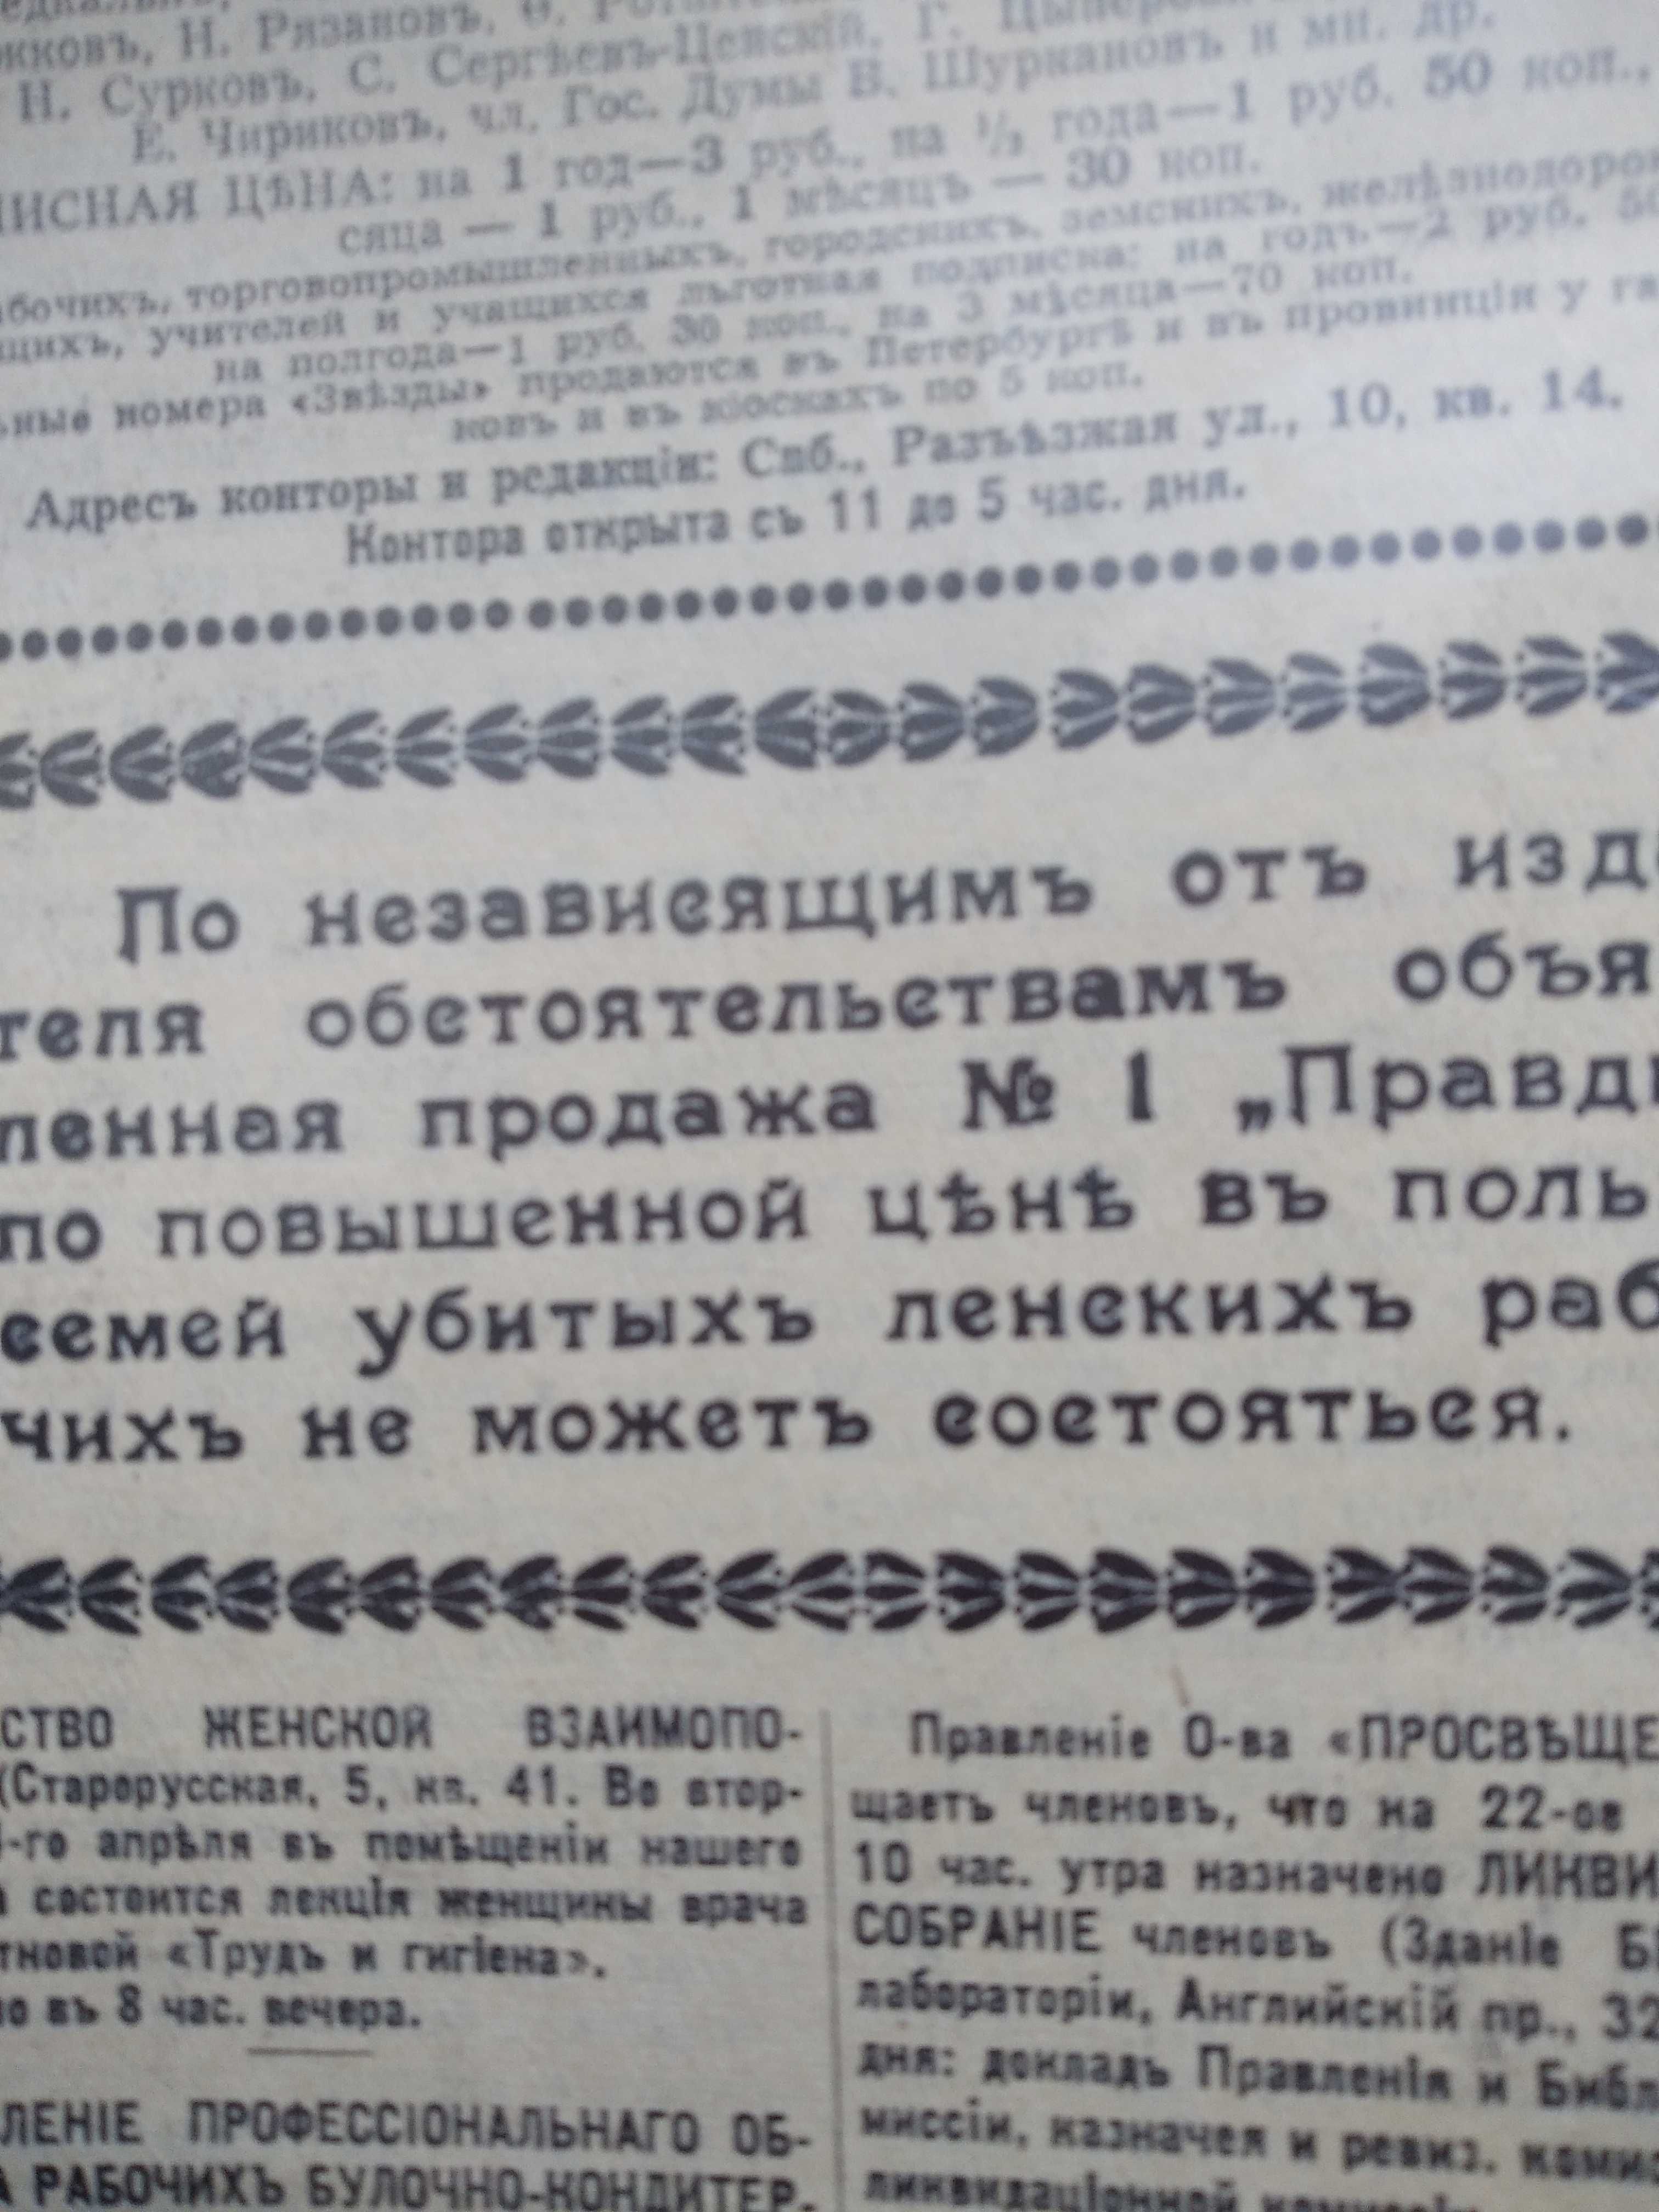 Газета "Правда" выпуск №1, 1912 г. Репринт 1962 г.